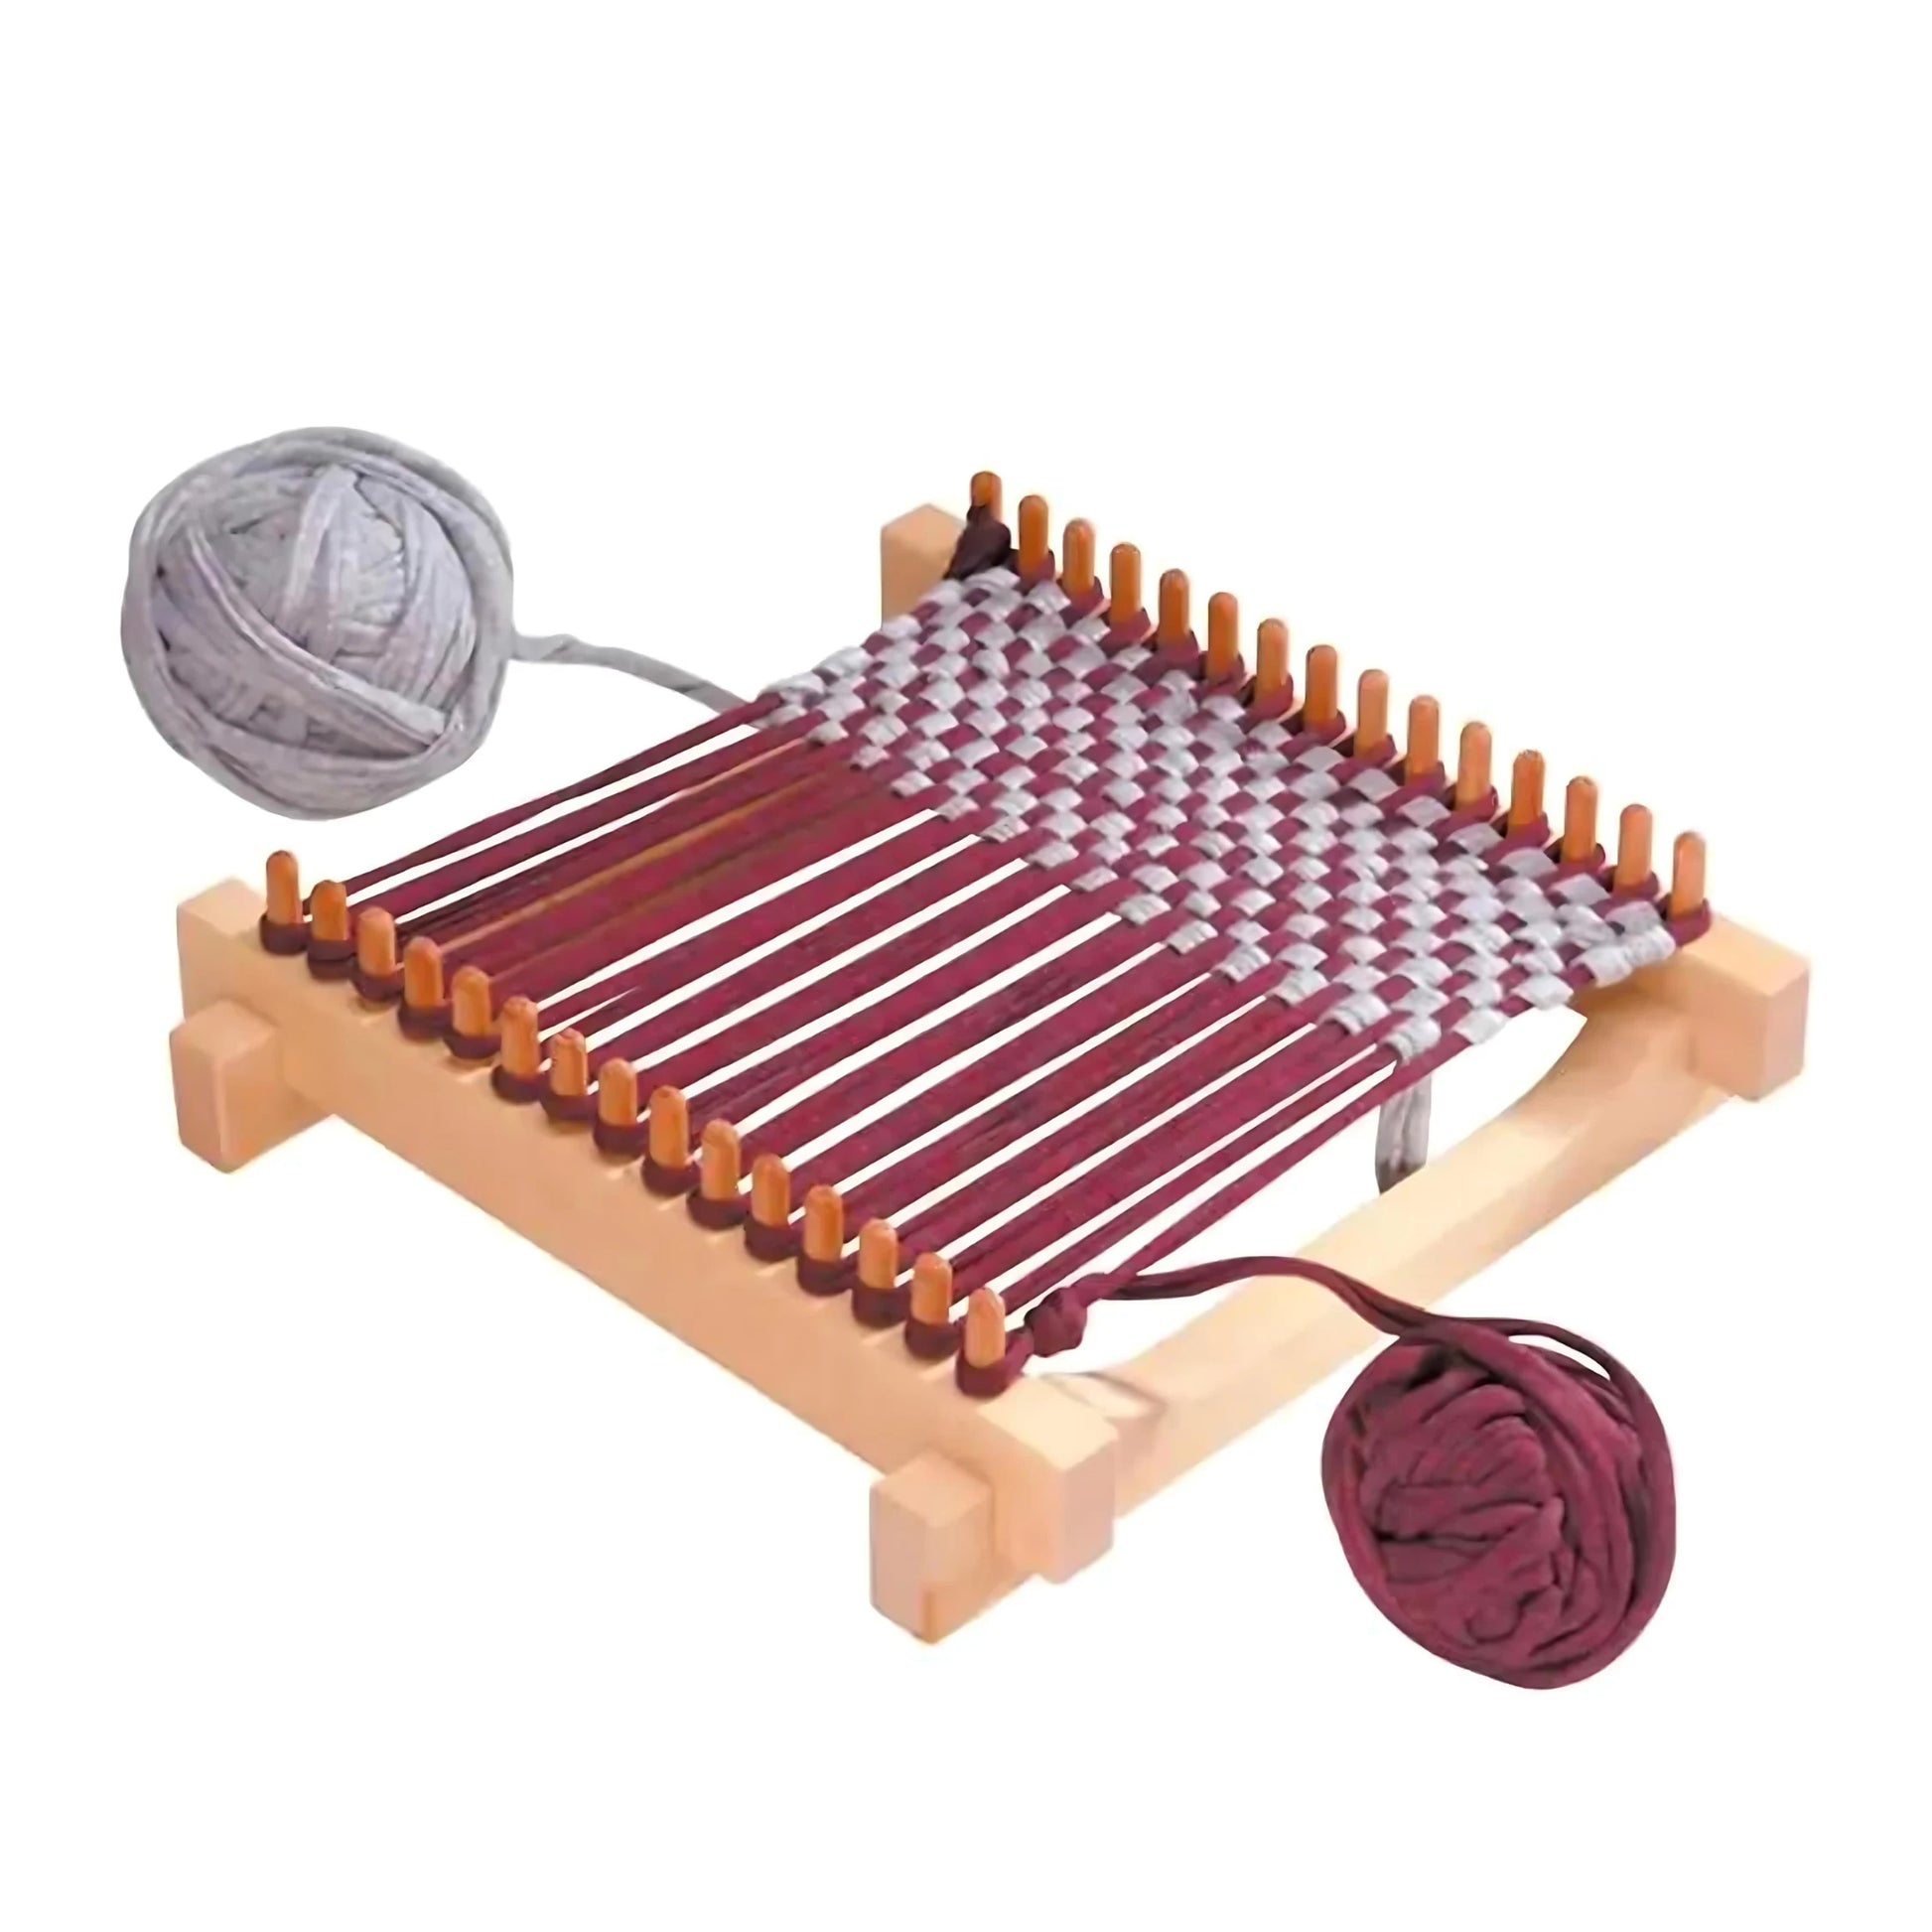 Potholder Weaving Loom Kit - Alder & Alouette